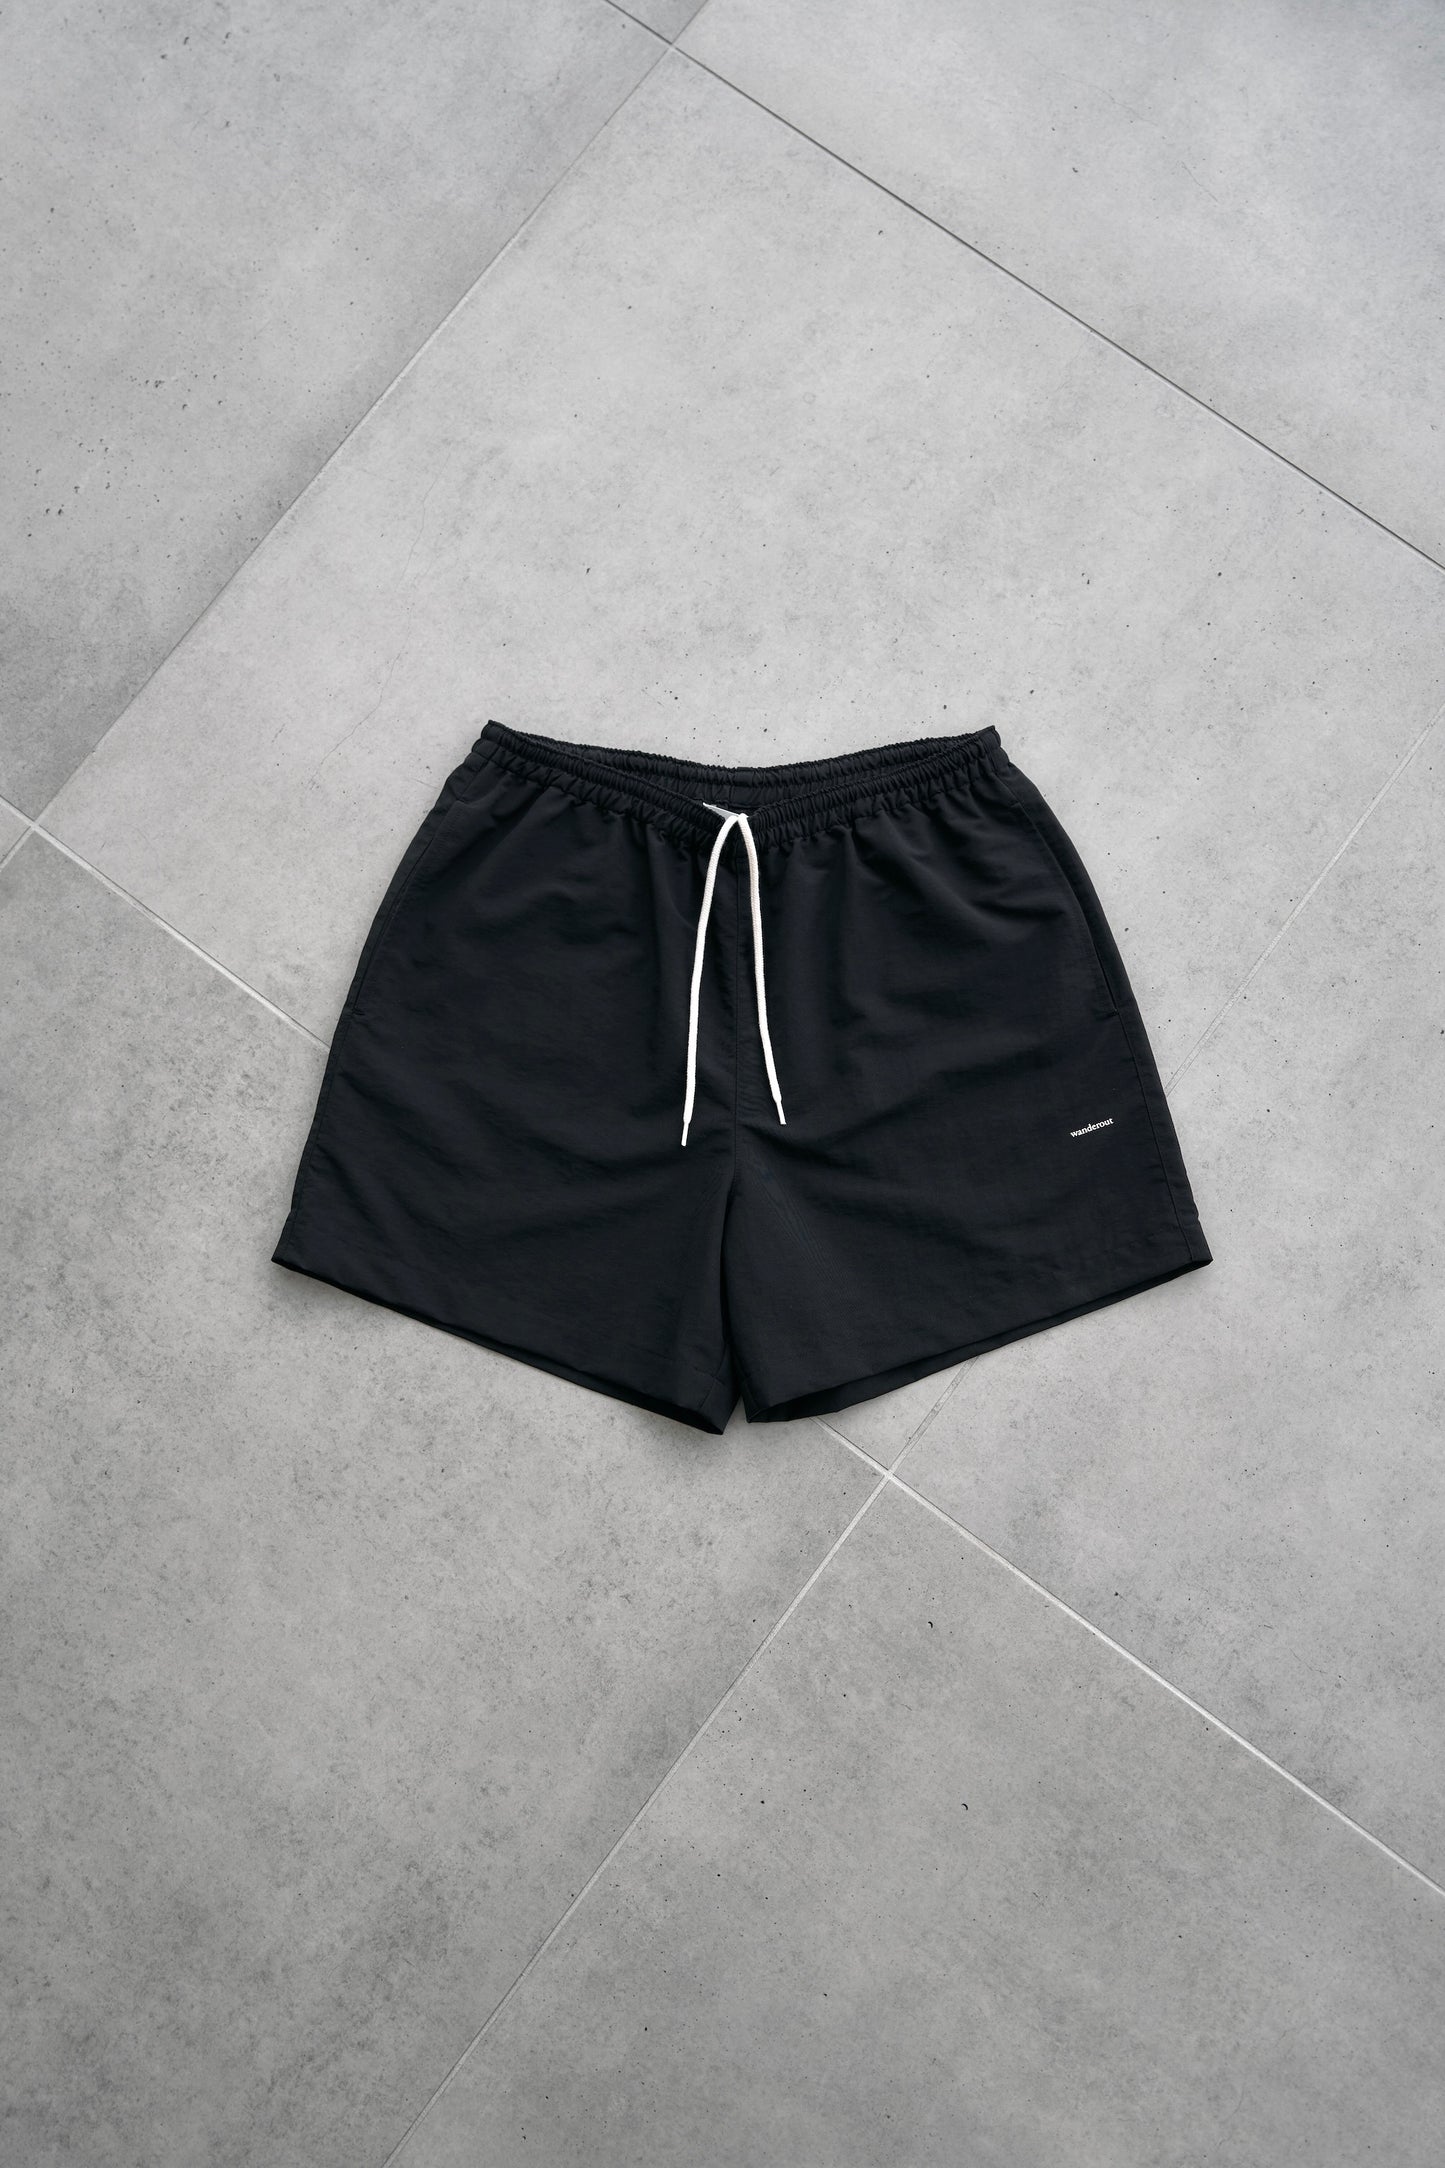 Wanderout / Universal Shorts - Black